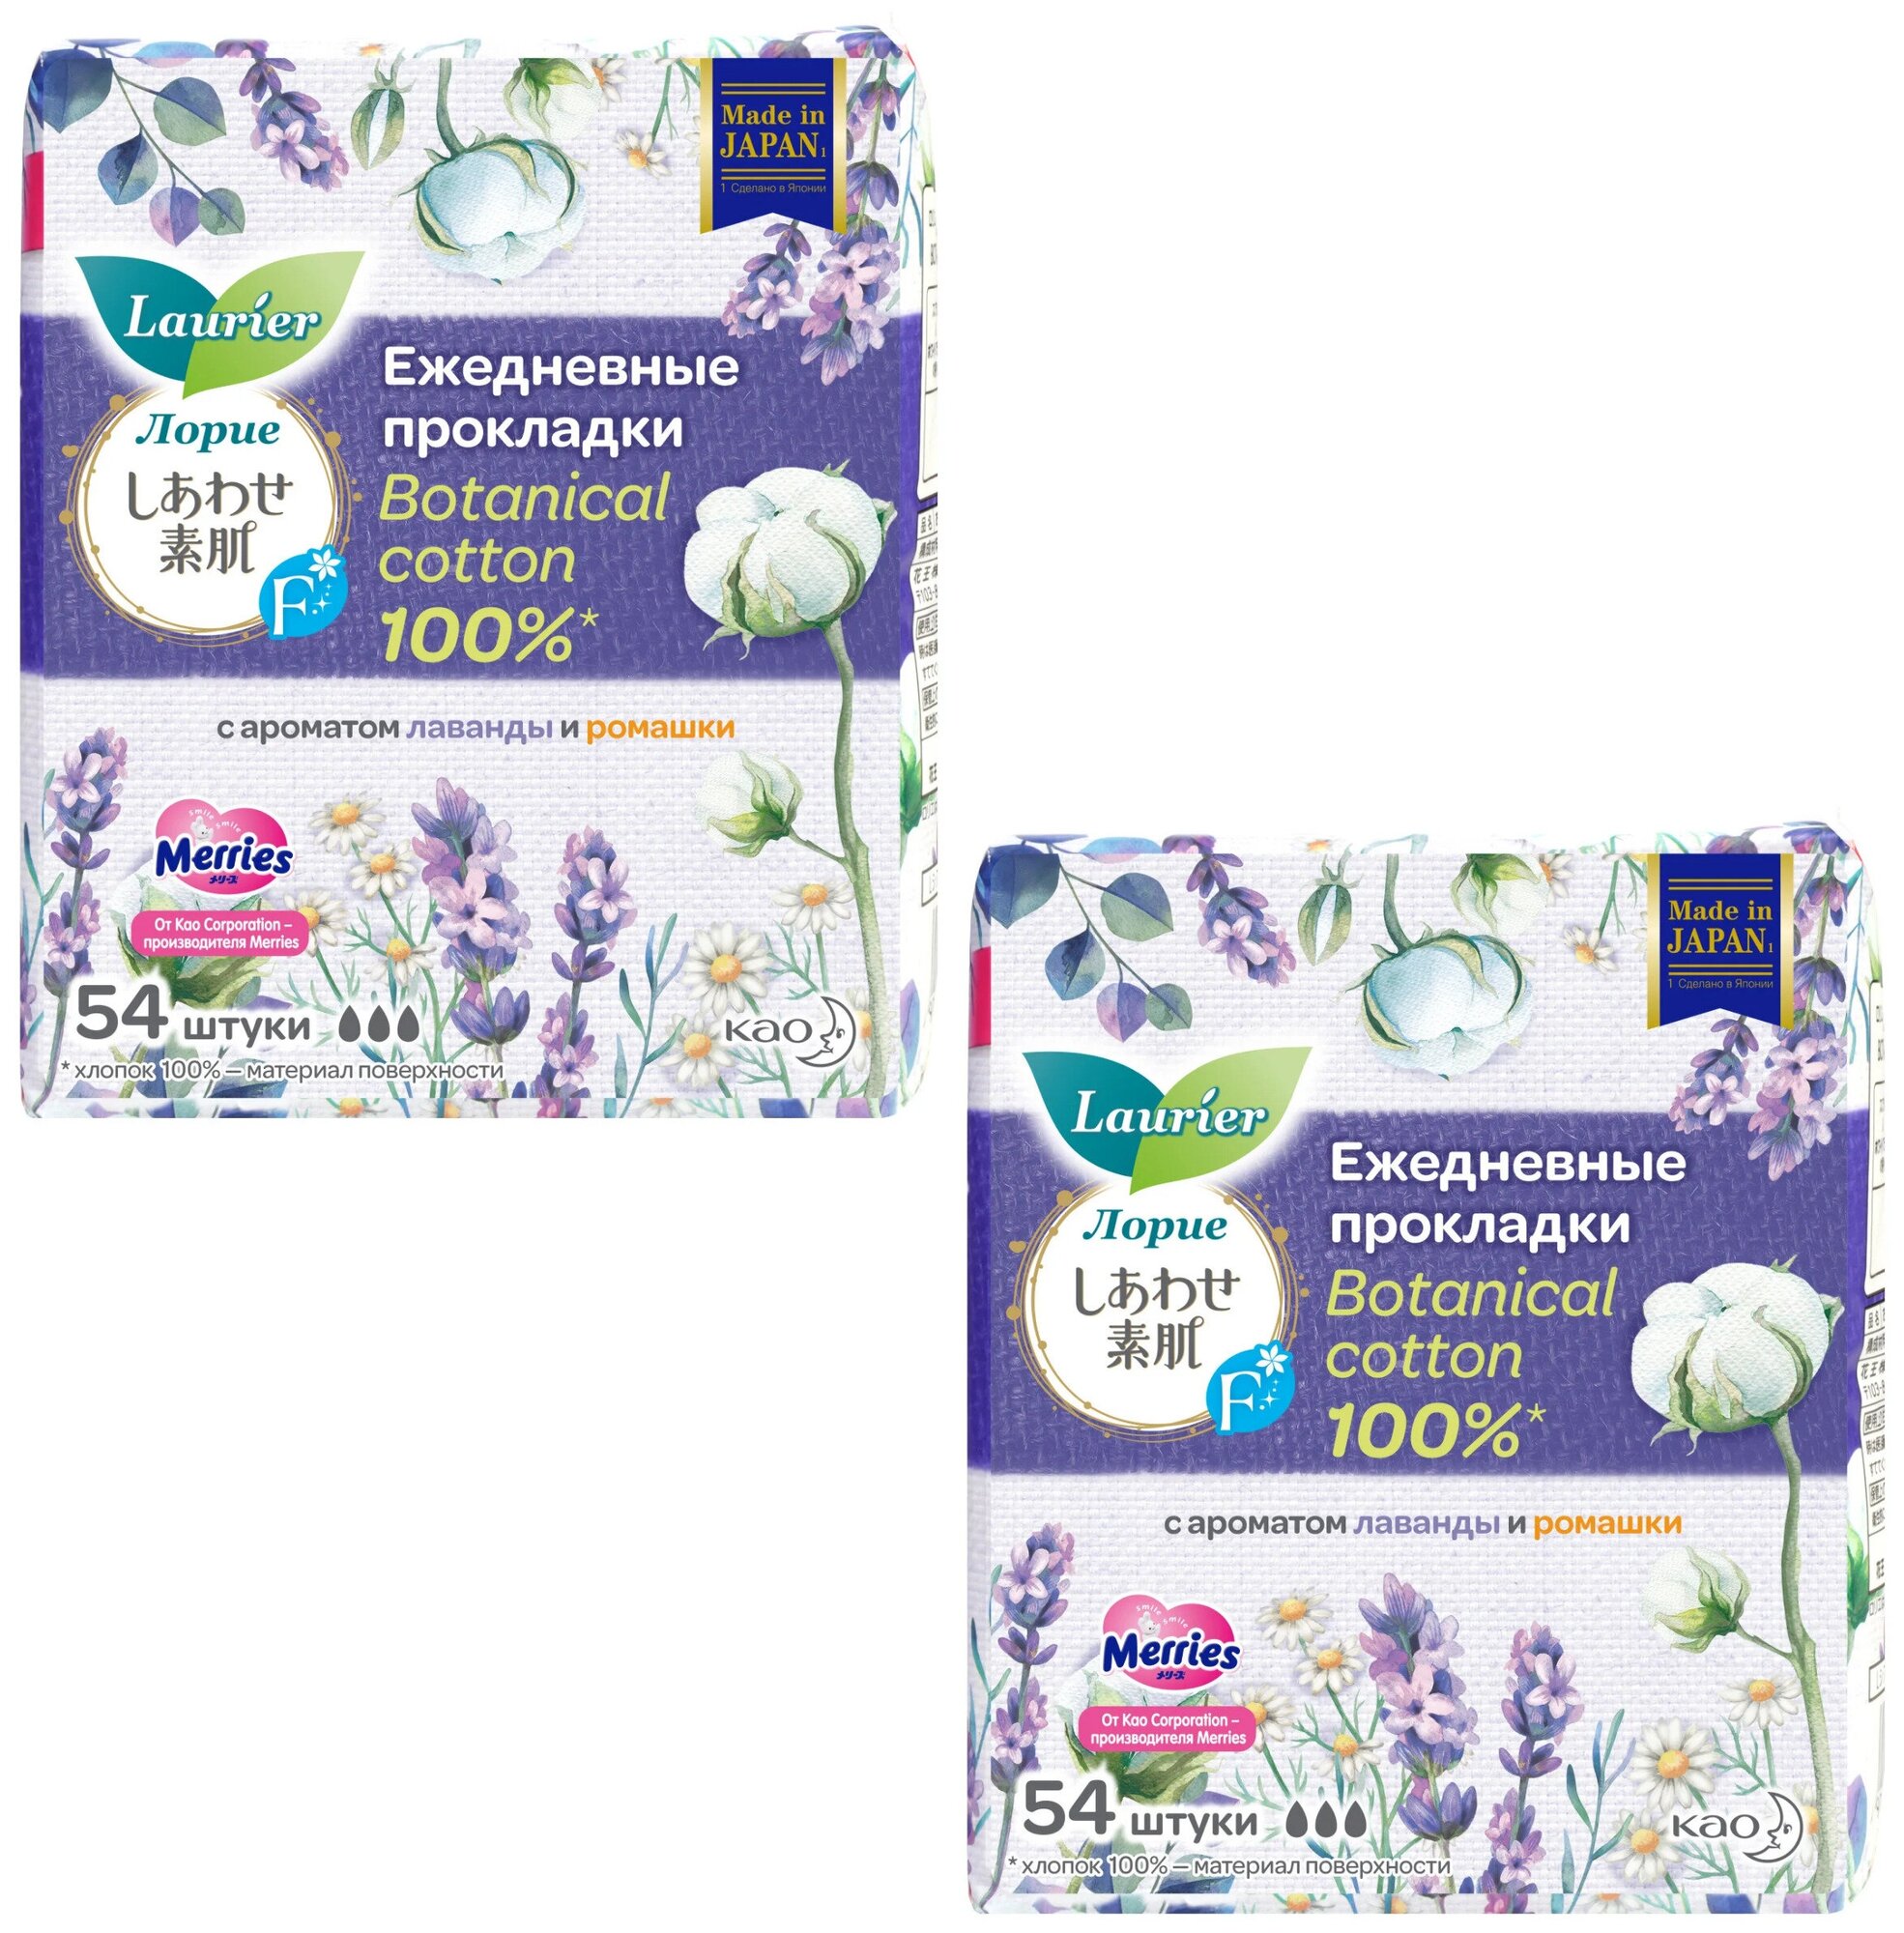 Laurier F Botanical Cotton Женские гигиенические прокладки на каждый день c ароматом Лаванды и Ромашки 54 шт, 2 упаковки